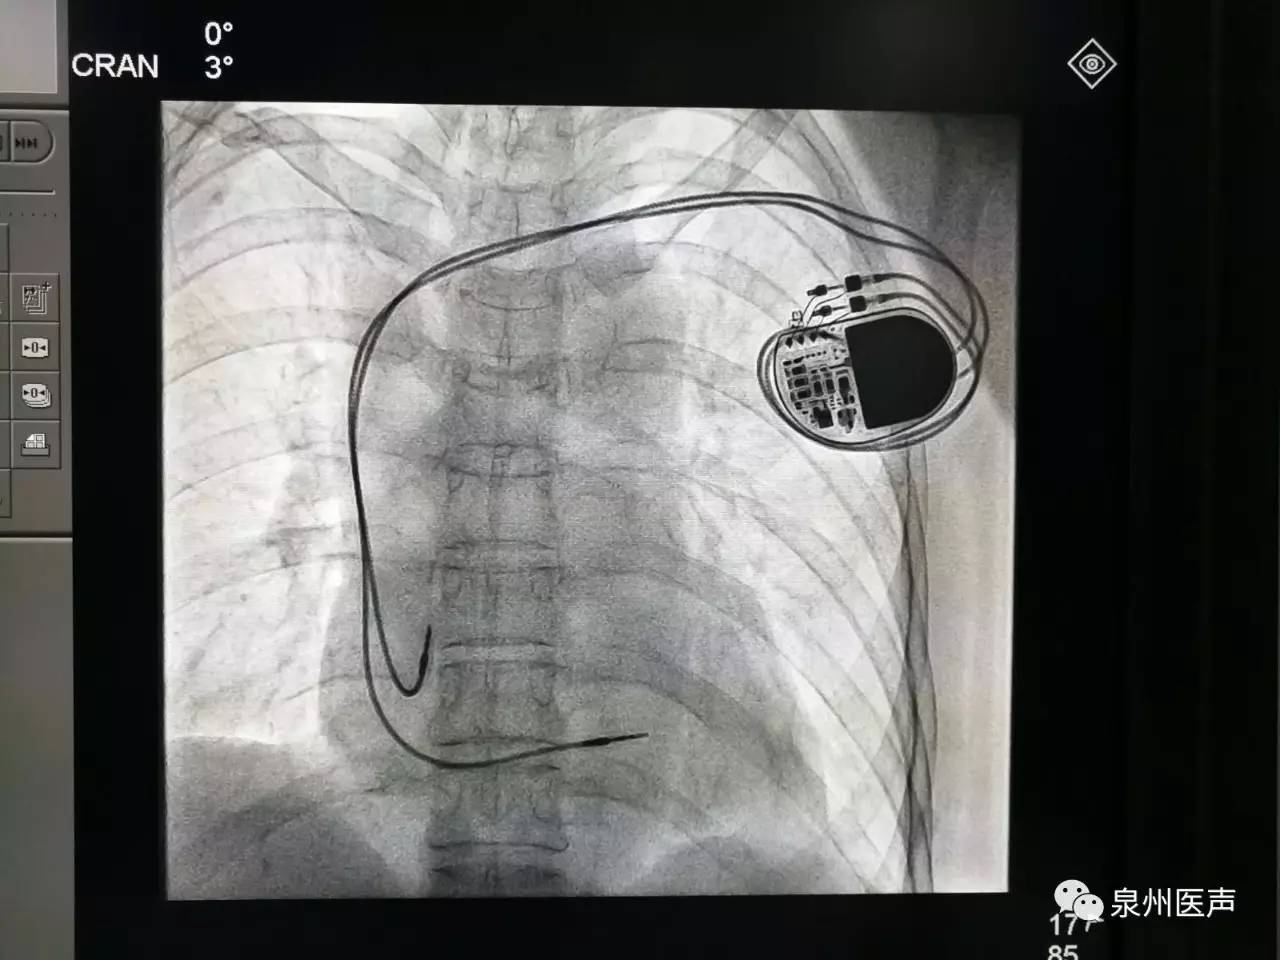 66岁老人心脏长达10秒不跳,晋江市中医院为其装起搏器